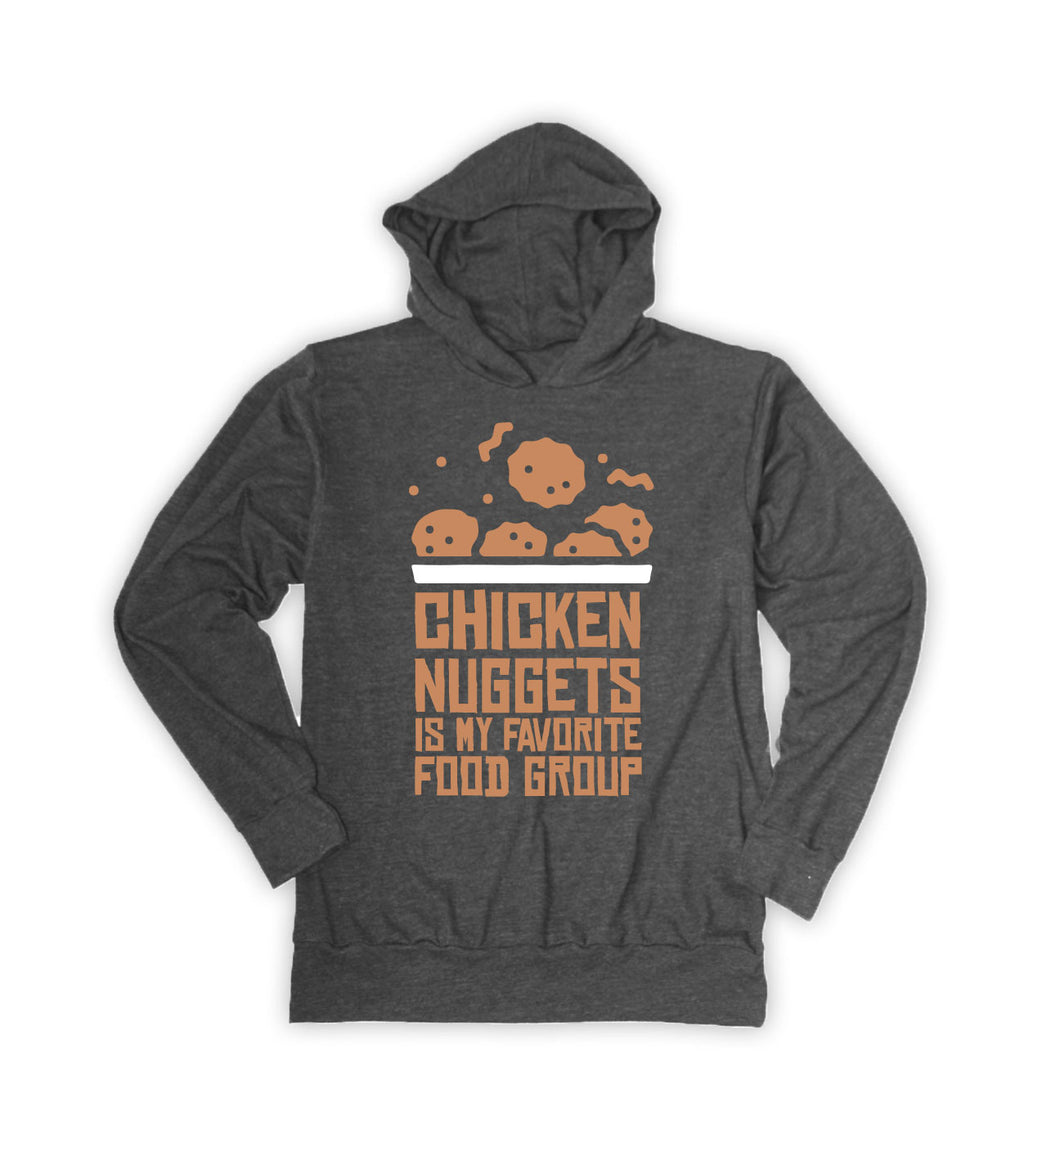 Chicken nuggets lightweight graphic hoodie